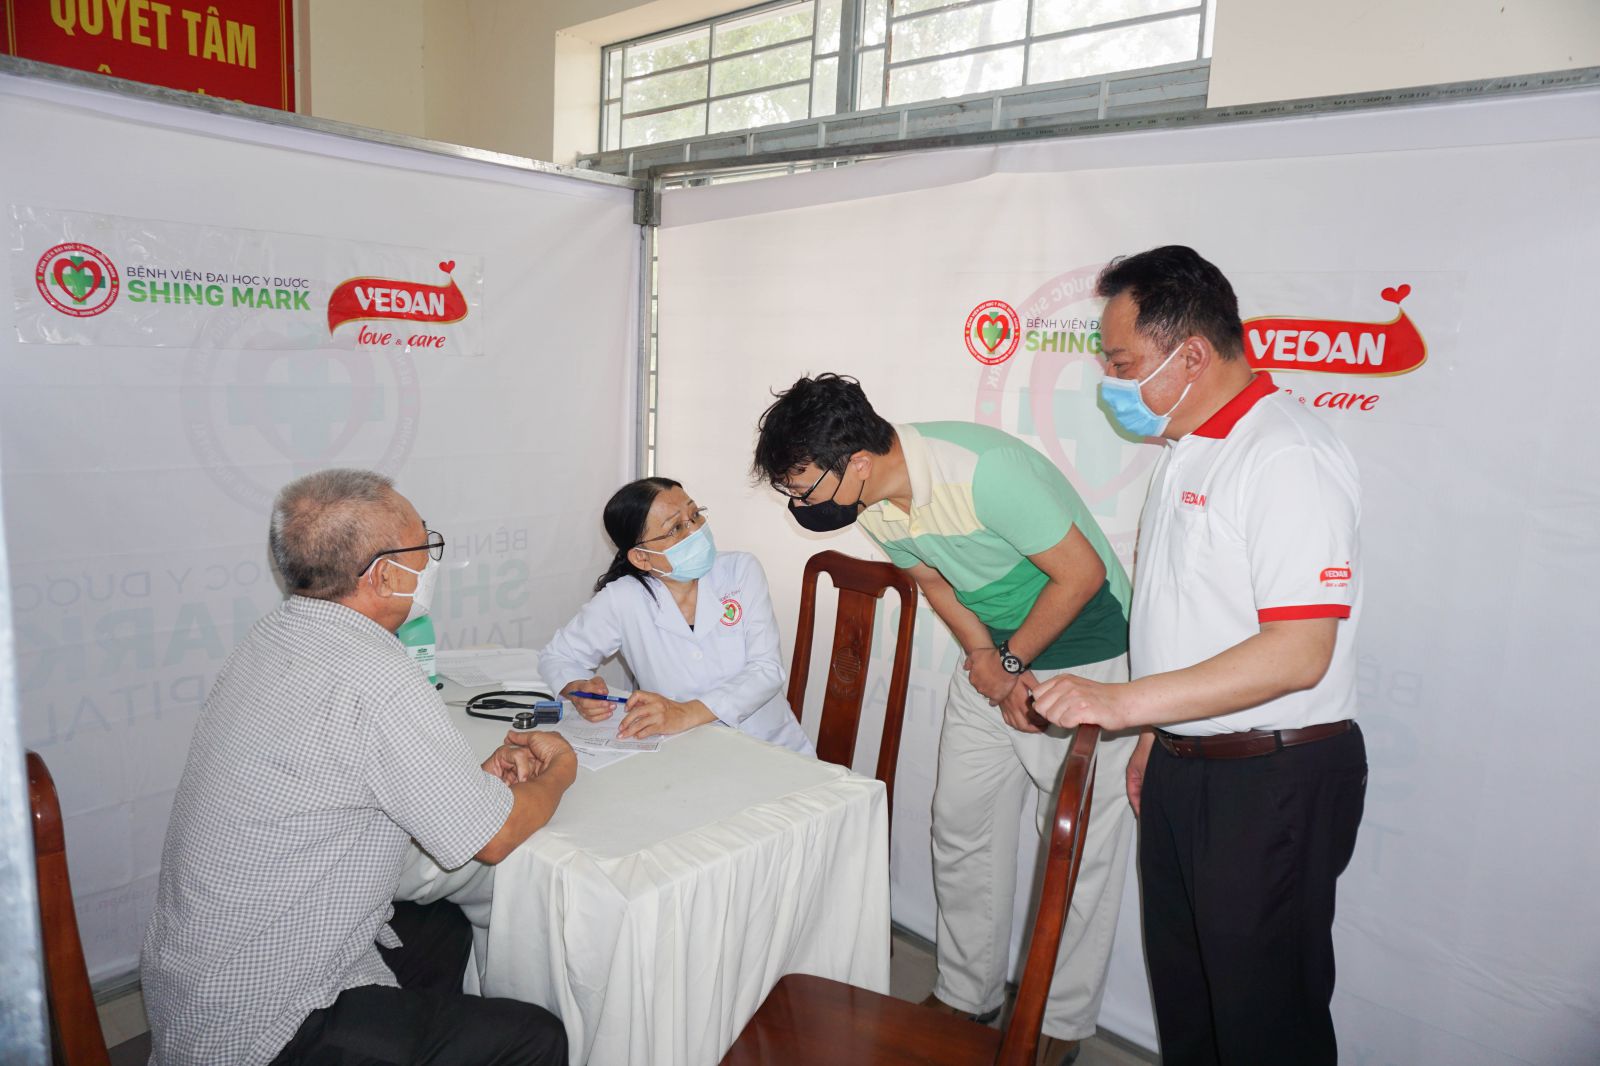 Lãnh đạo Vedan Việt Nam và bệnh viện Shing Mark đến thăm các bệnh nhân tại sự kiện